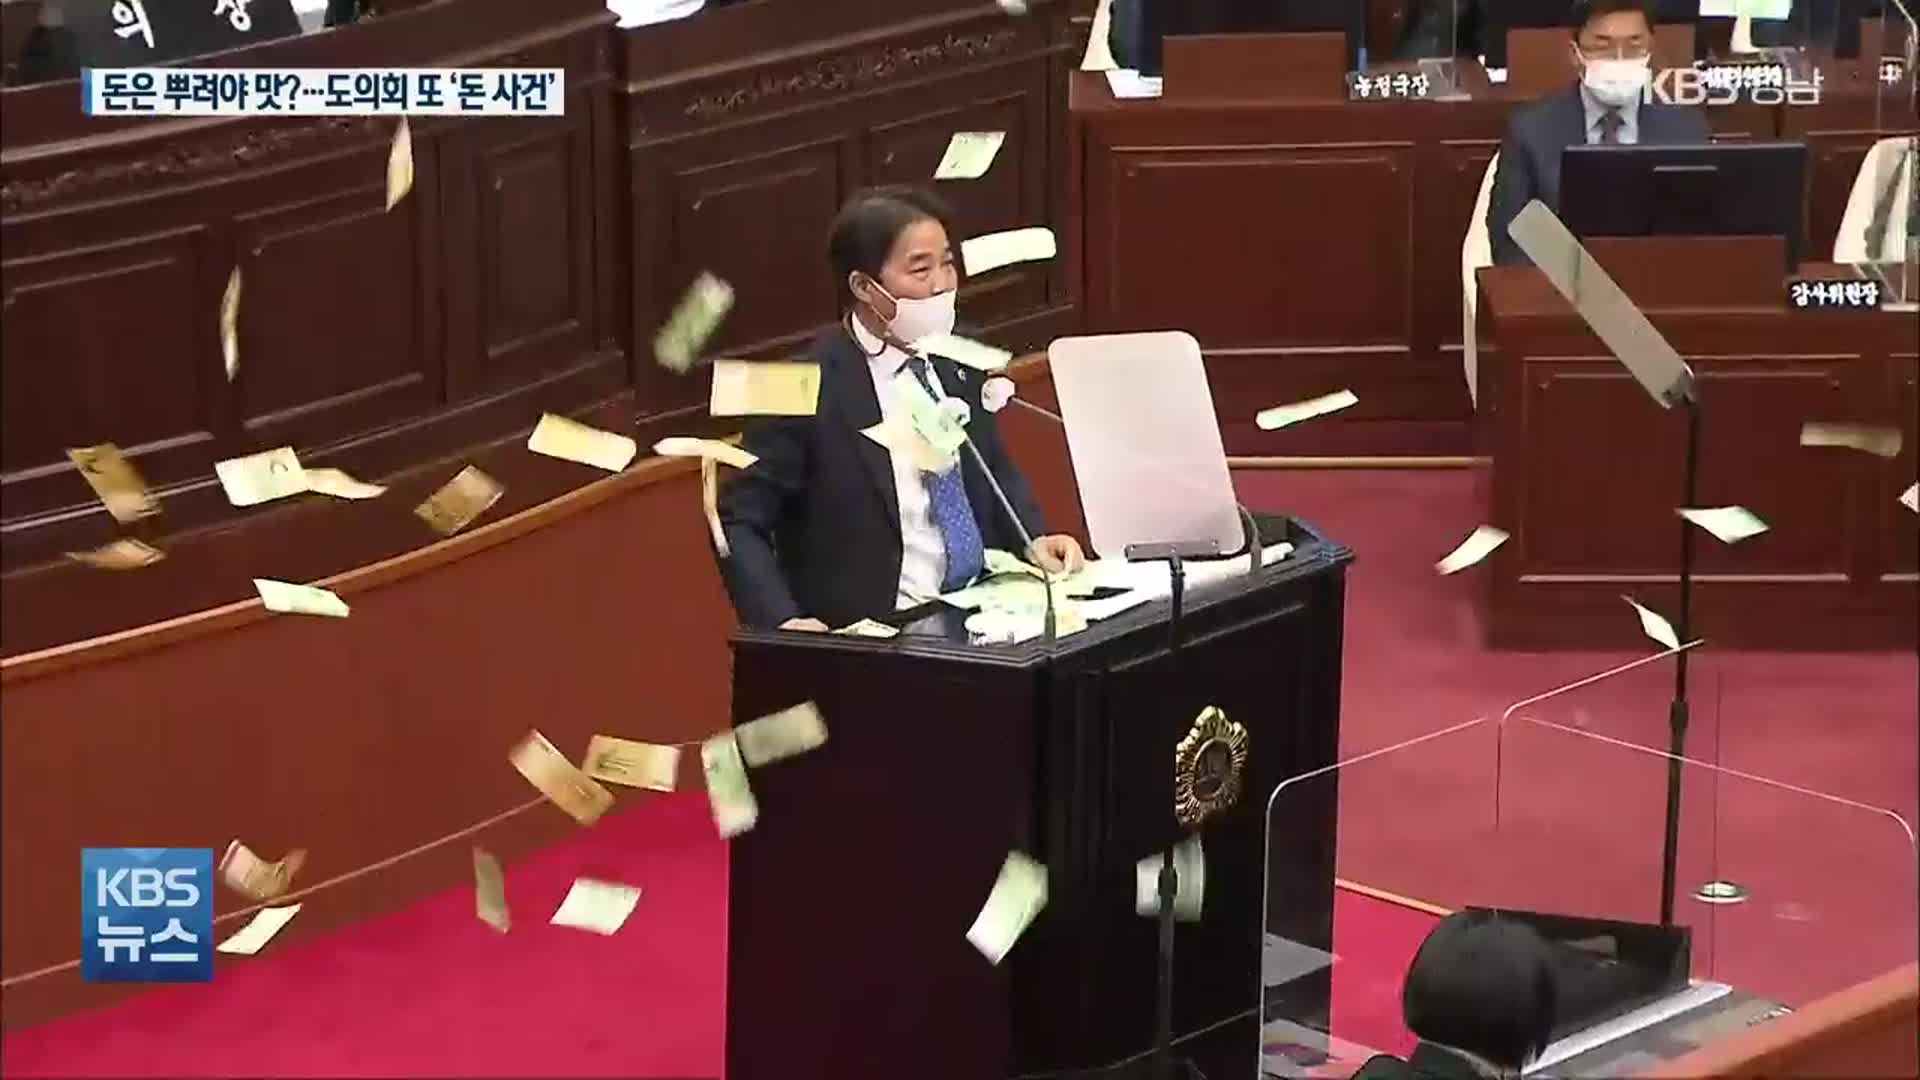 [영상] 경남도의회에 ‘200만 원 뿌려진’ 사연은?